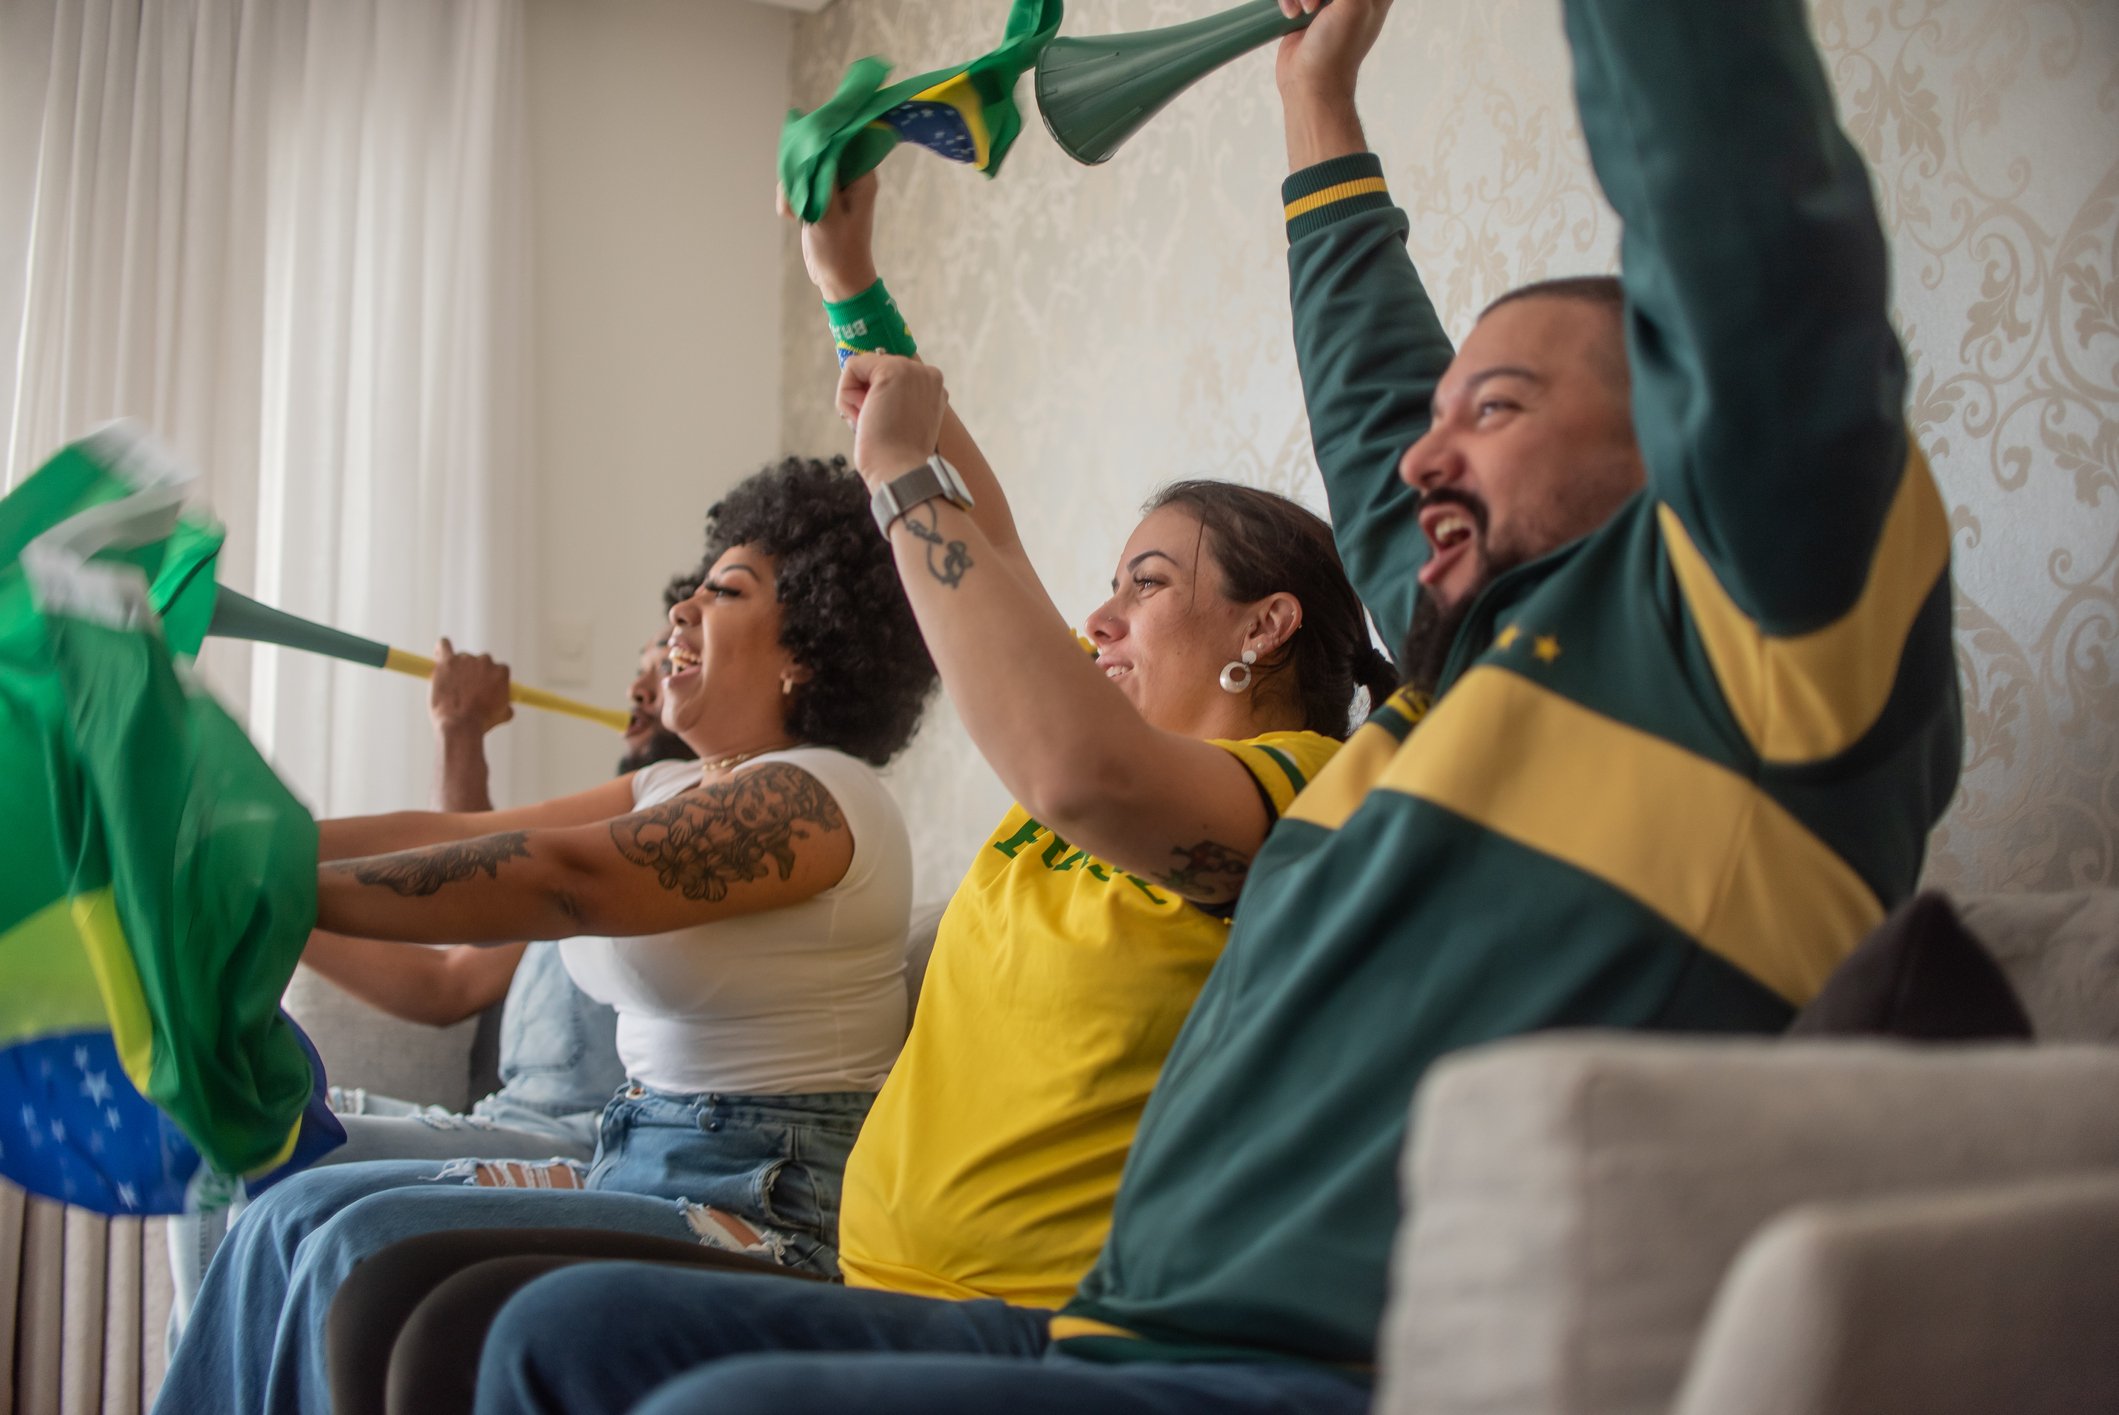 Copa do Mundo em casa: Monte sua mesa para receber a galera